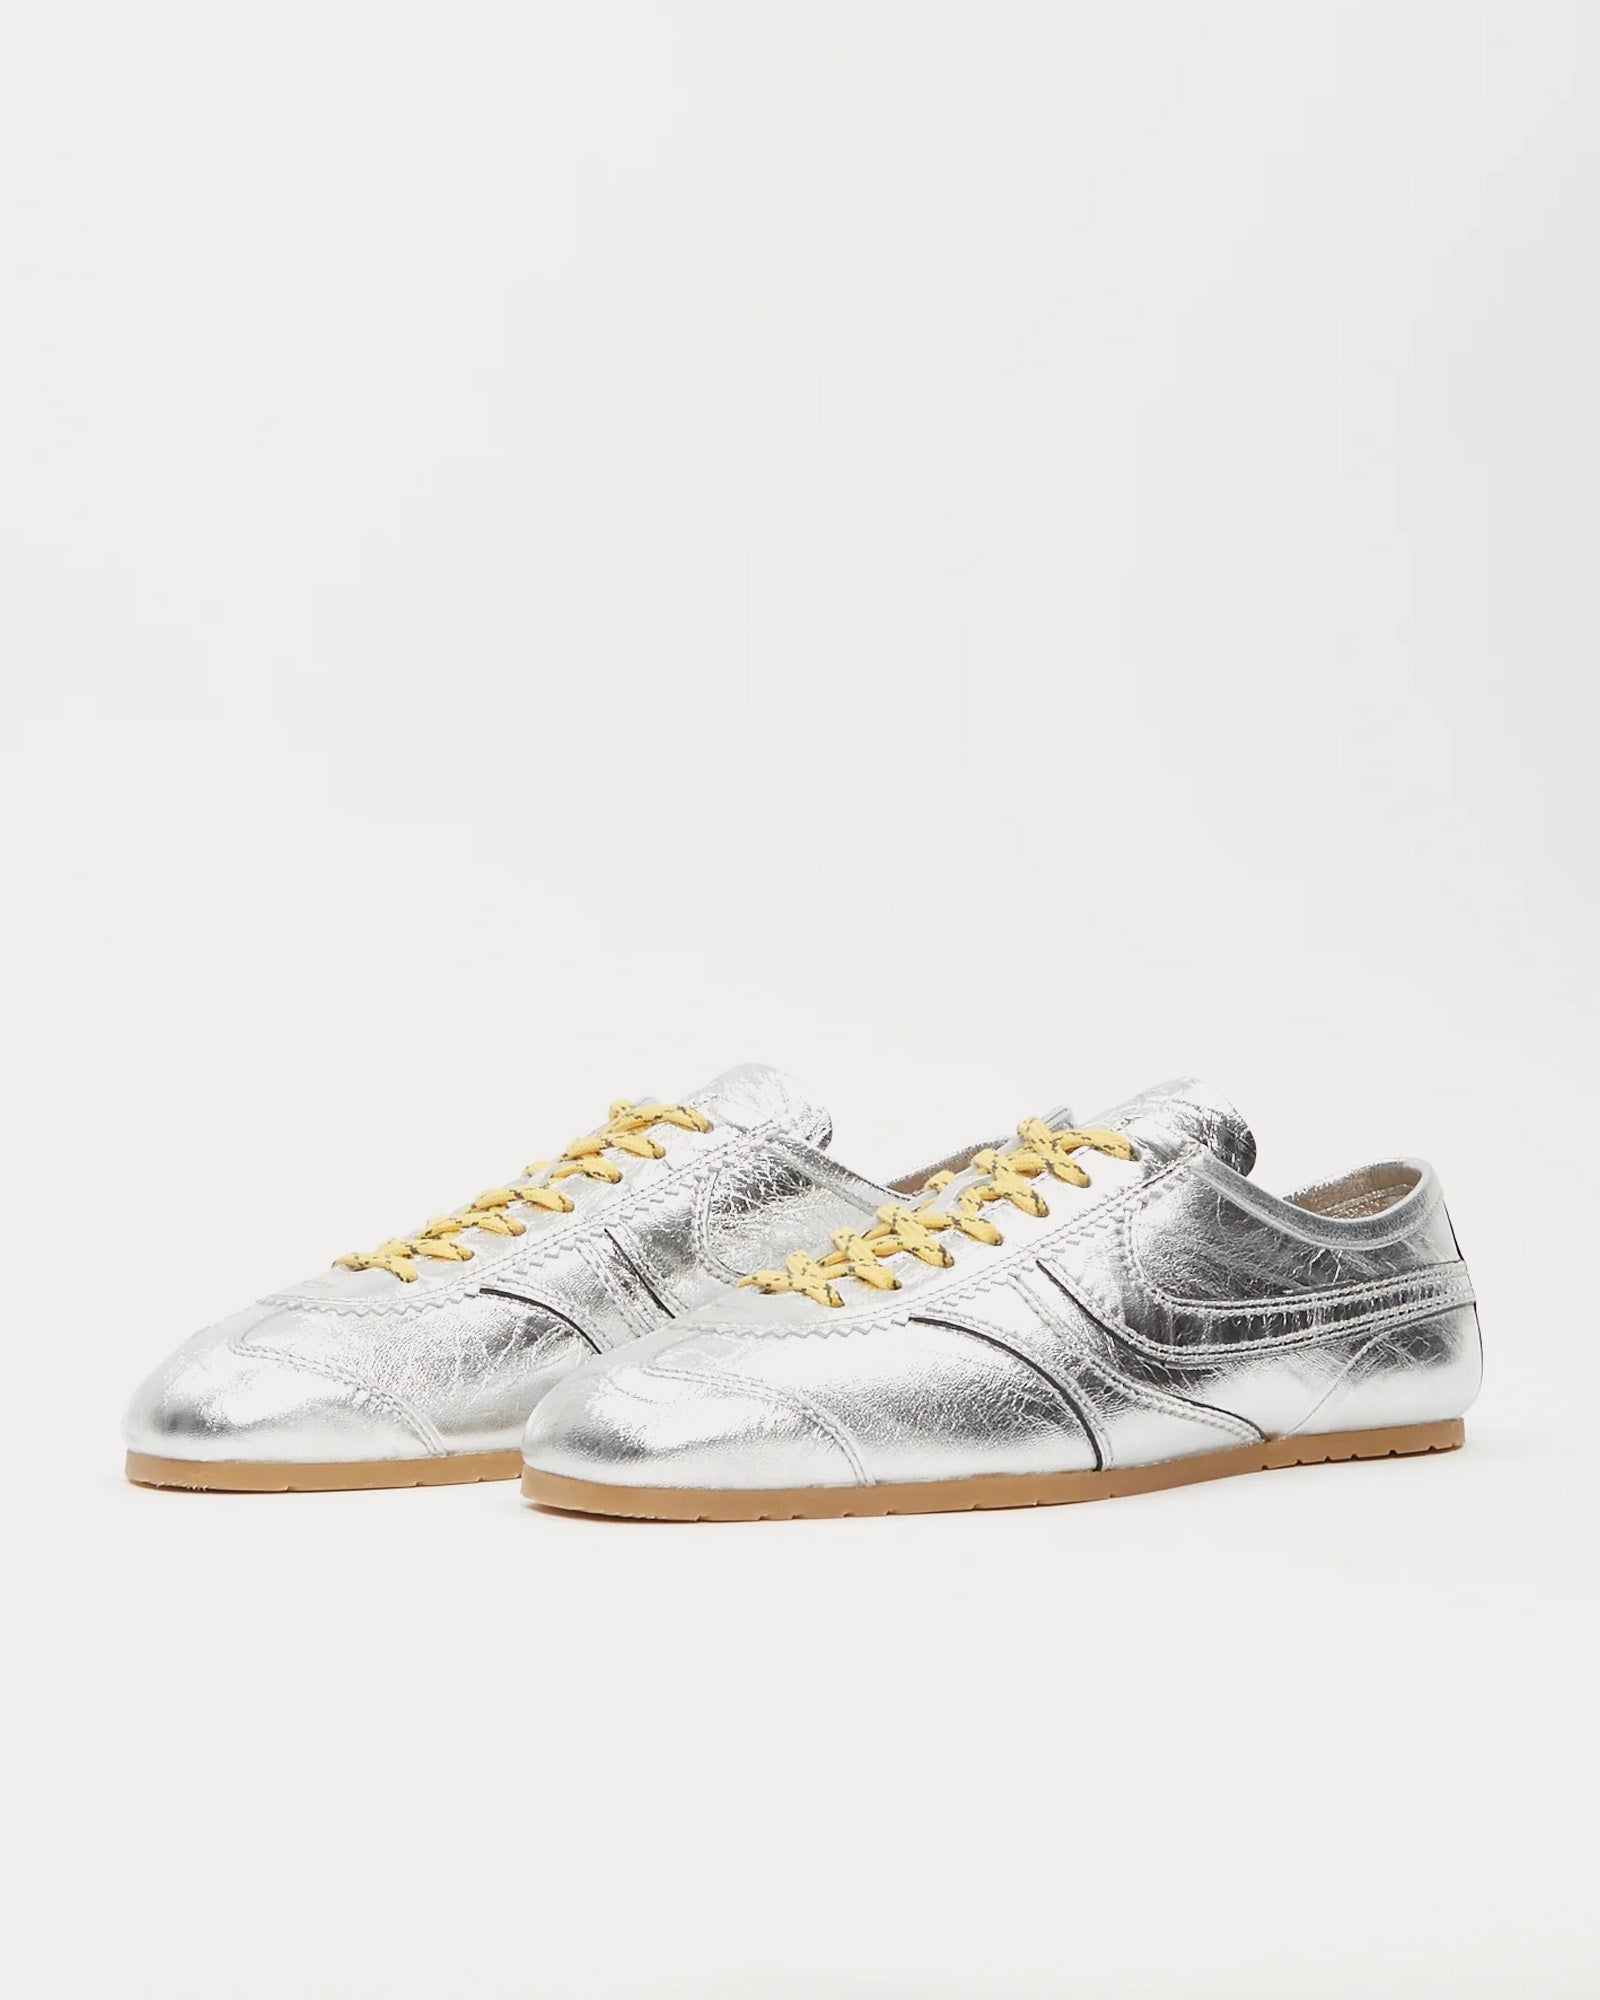 Dries Van Noten - 70's Leather Silver Low Top Sneakers